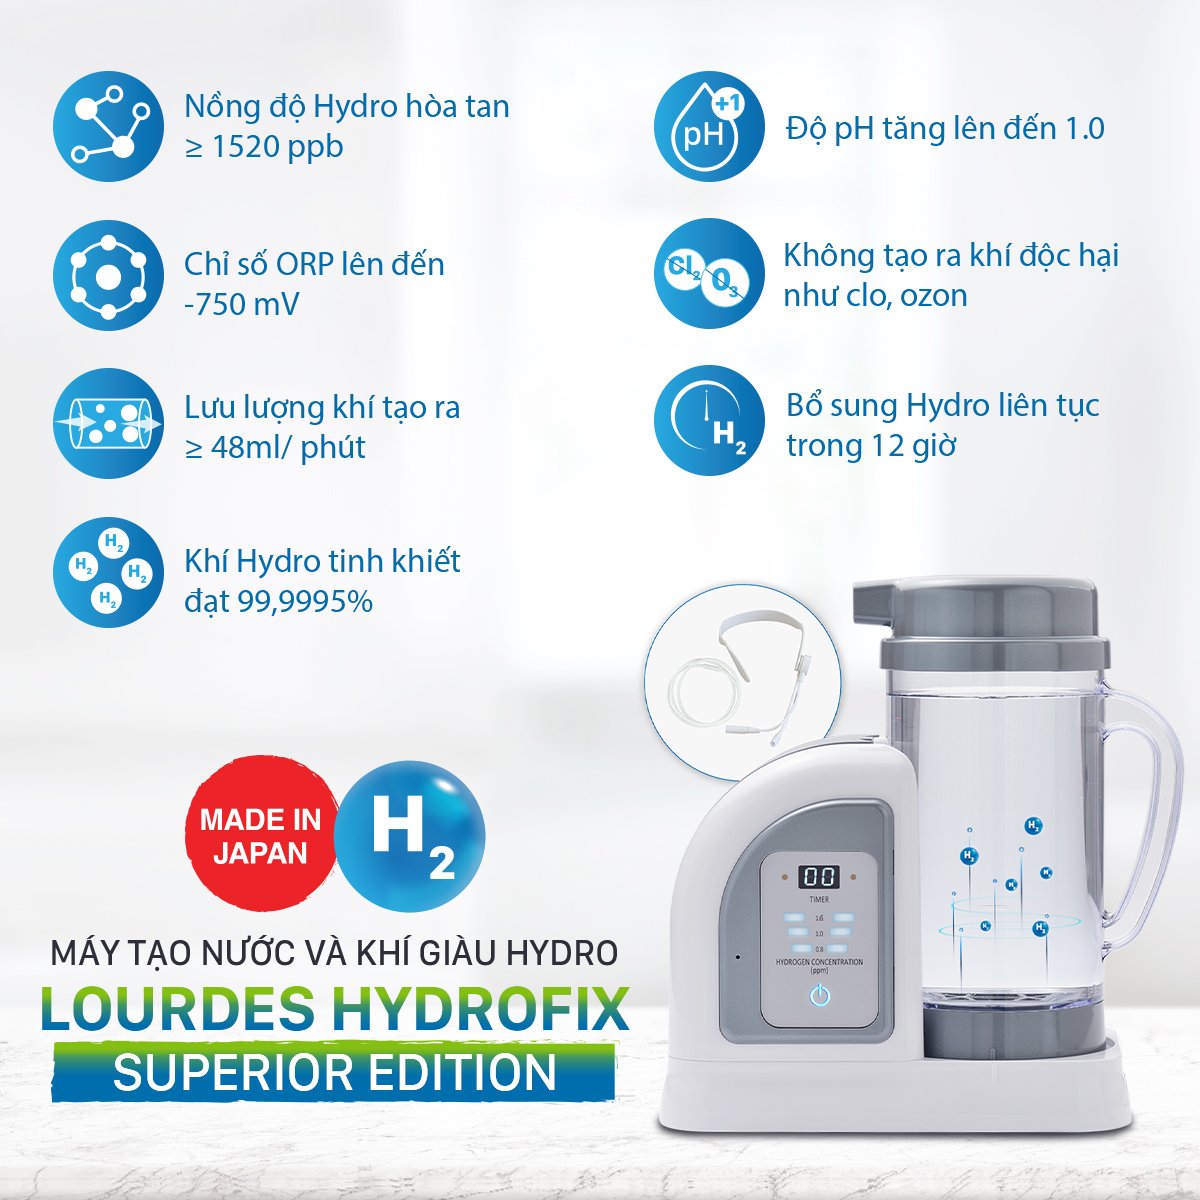 Máy tạo nước và khí giàu Hydro Lourdes Hydrofix (Superior Edition) - Thiết bị chăm sóc sức khỏe, sắc đẹp cho cả gia đình